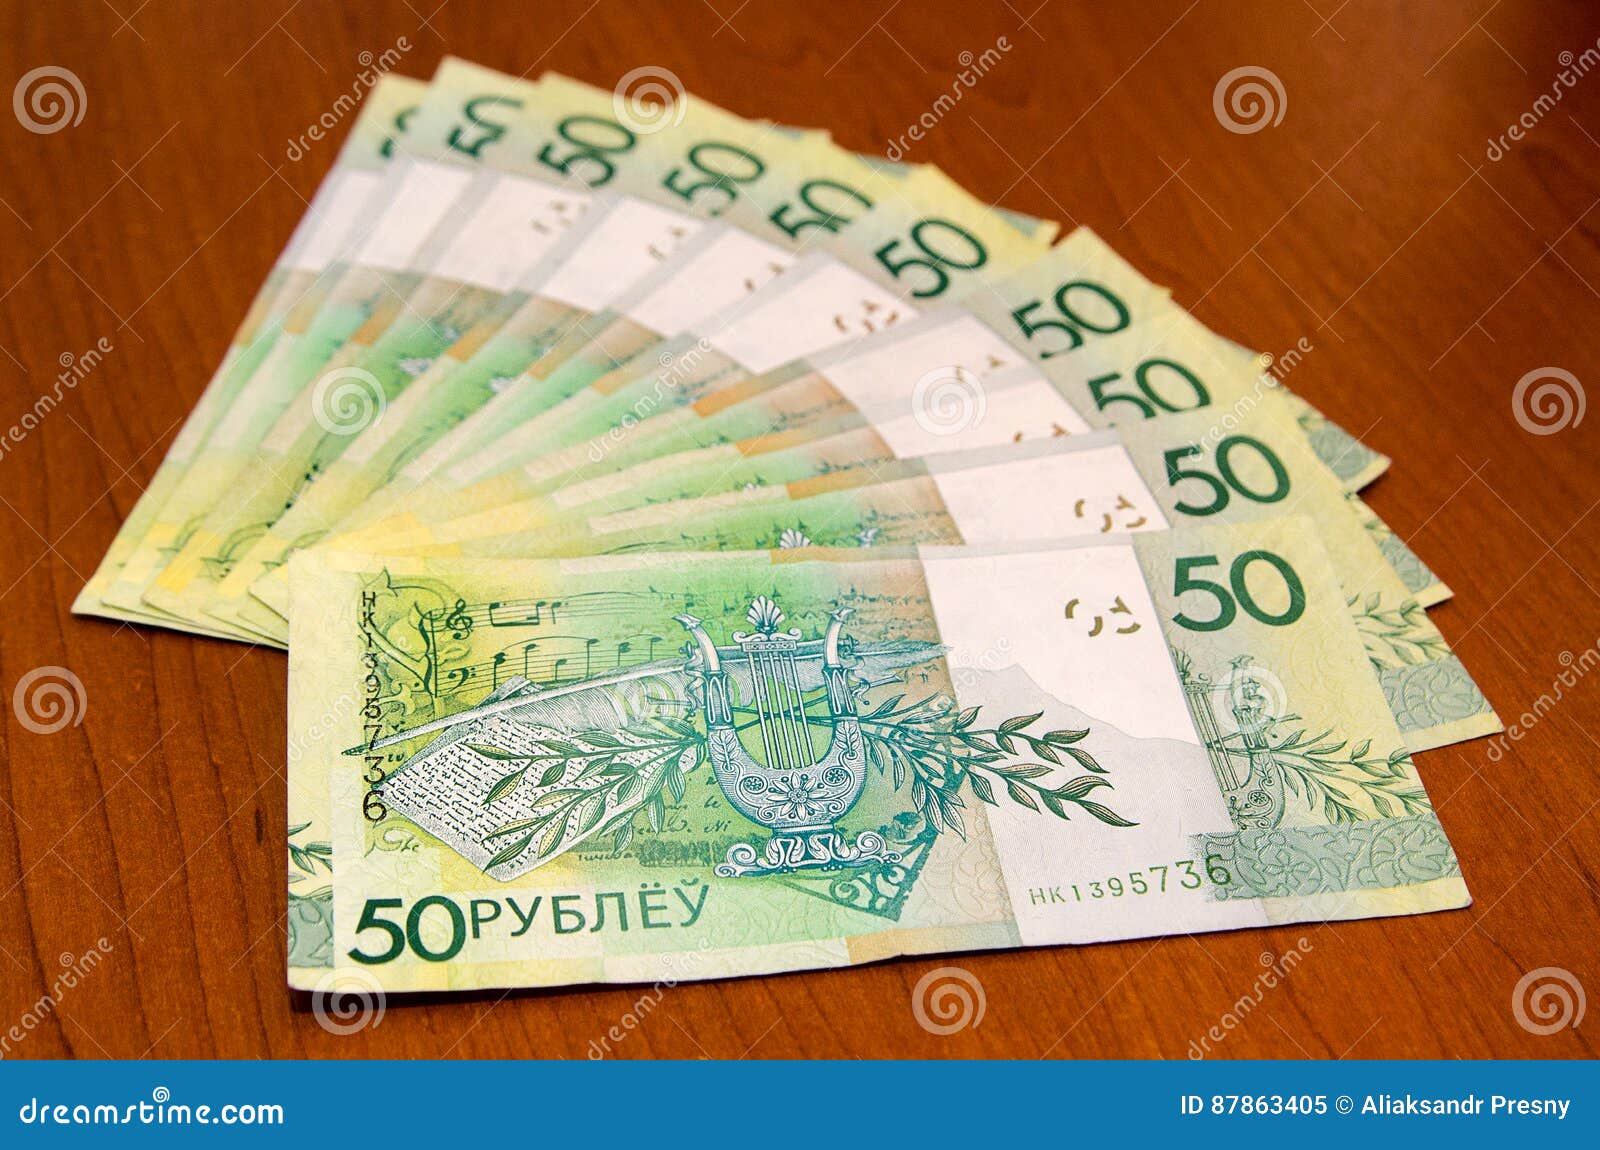 belorussian money. byn belarus money